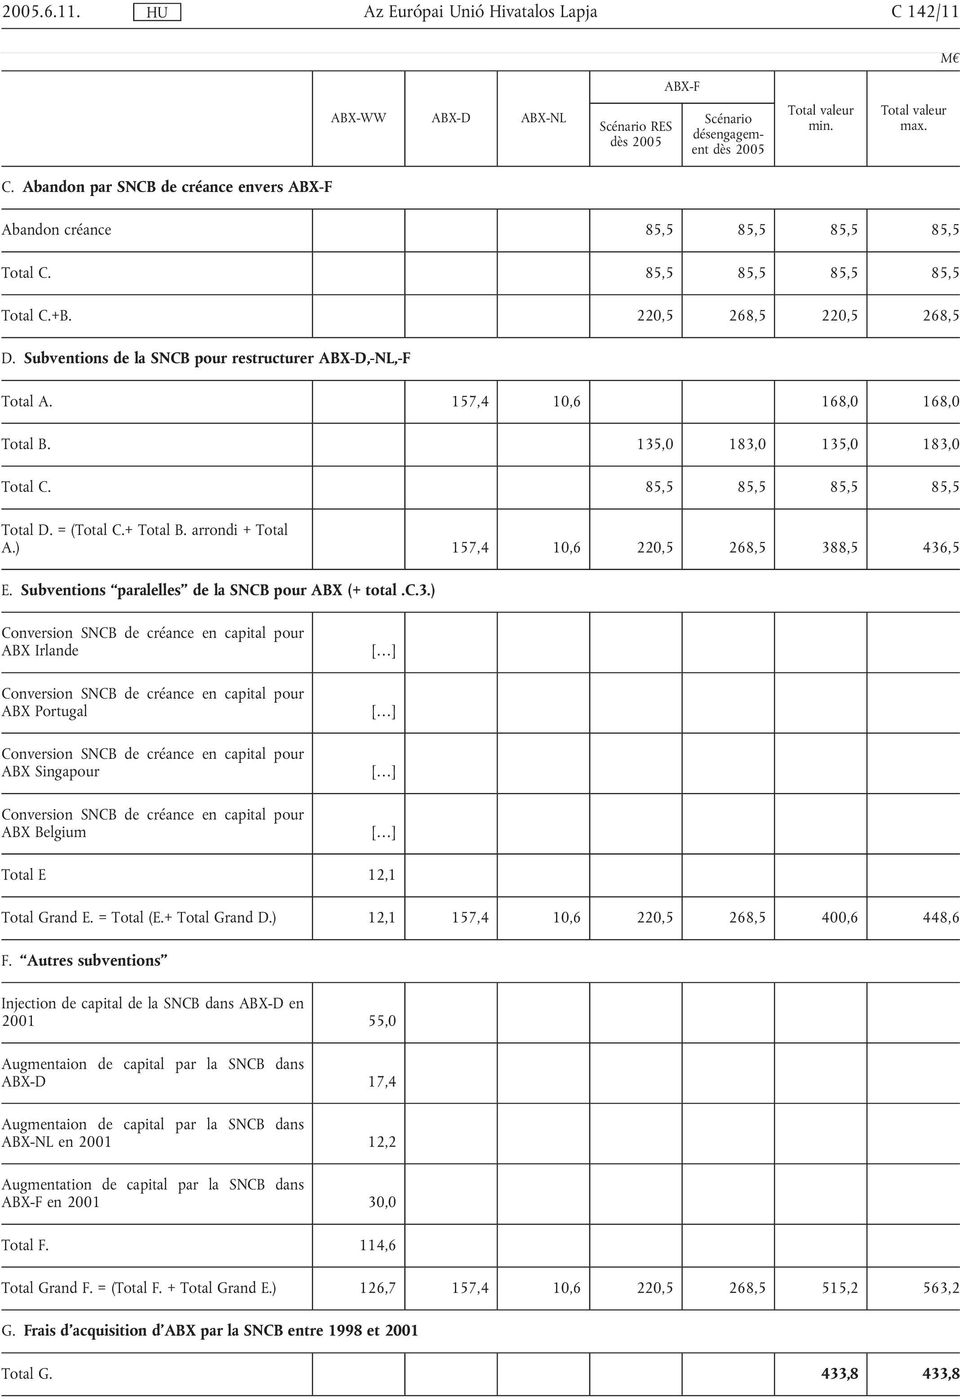 Subventions de la SNCB pour restructurer ABX-D,-NL,-F Total A. 157,4 10,6 168,0 168,0 Total B. 135,0 183,0 135,0 183,0 Total C. 85,5 85,5 85,5 85,5 Total D. = (Total C.+ Total B. arrondi + Total A.